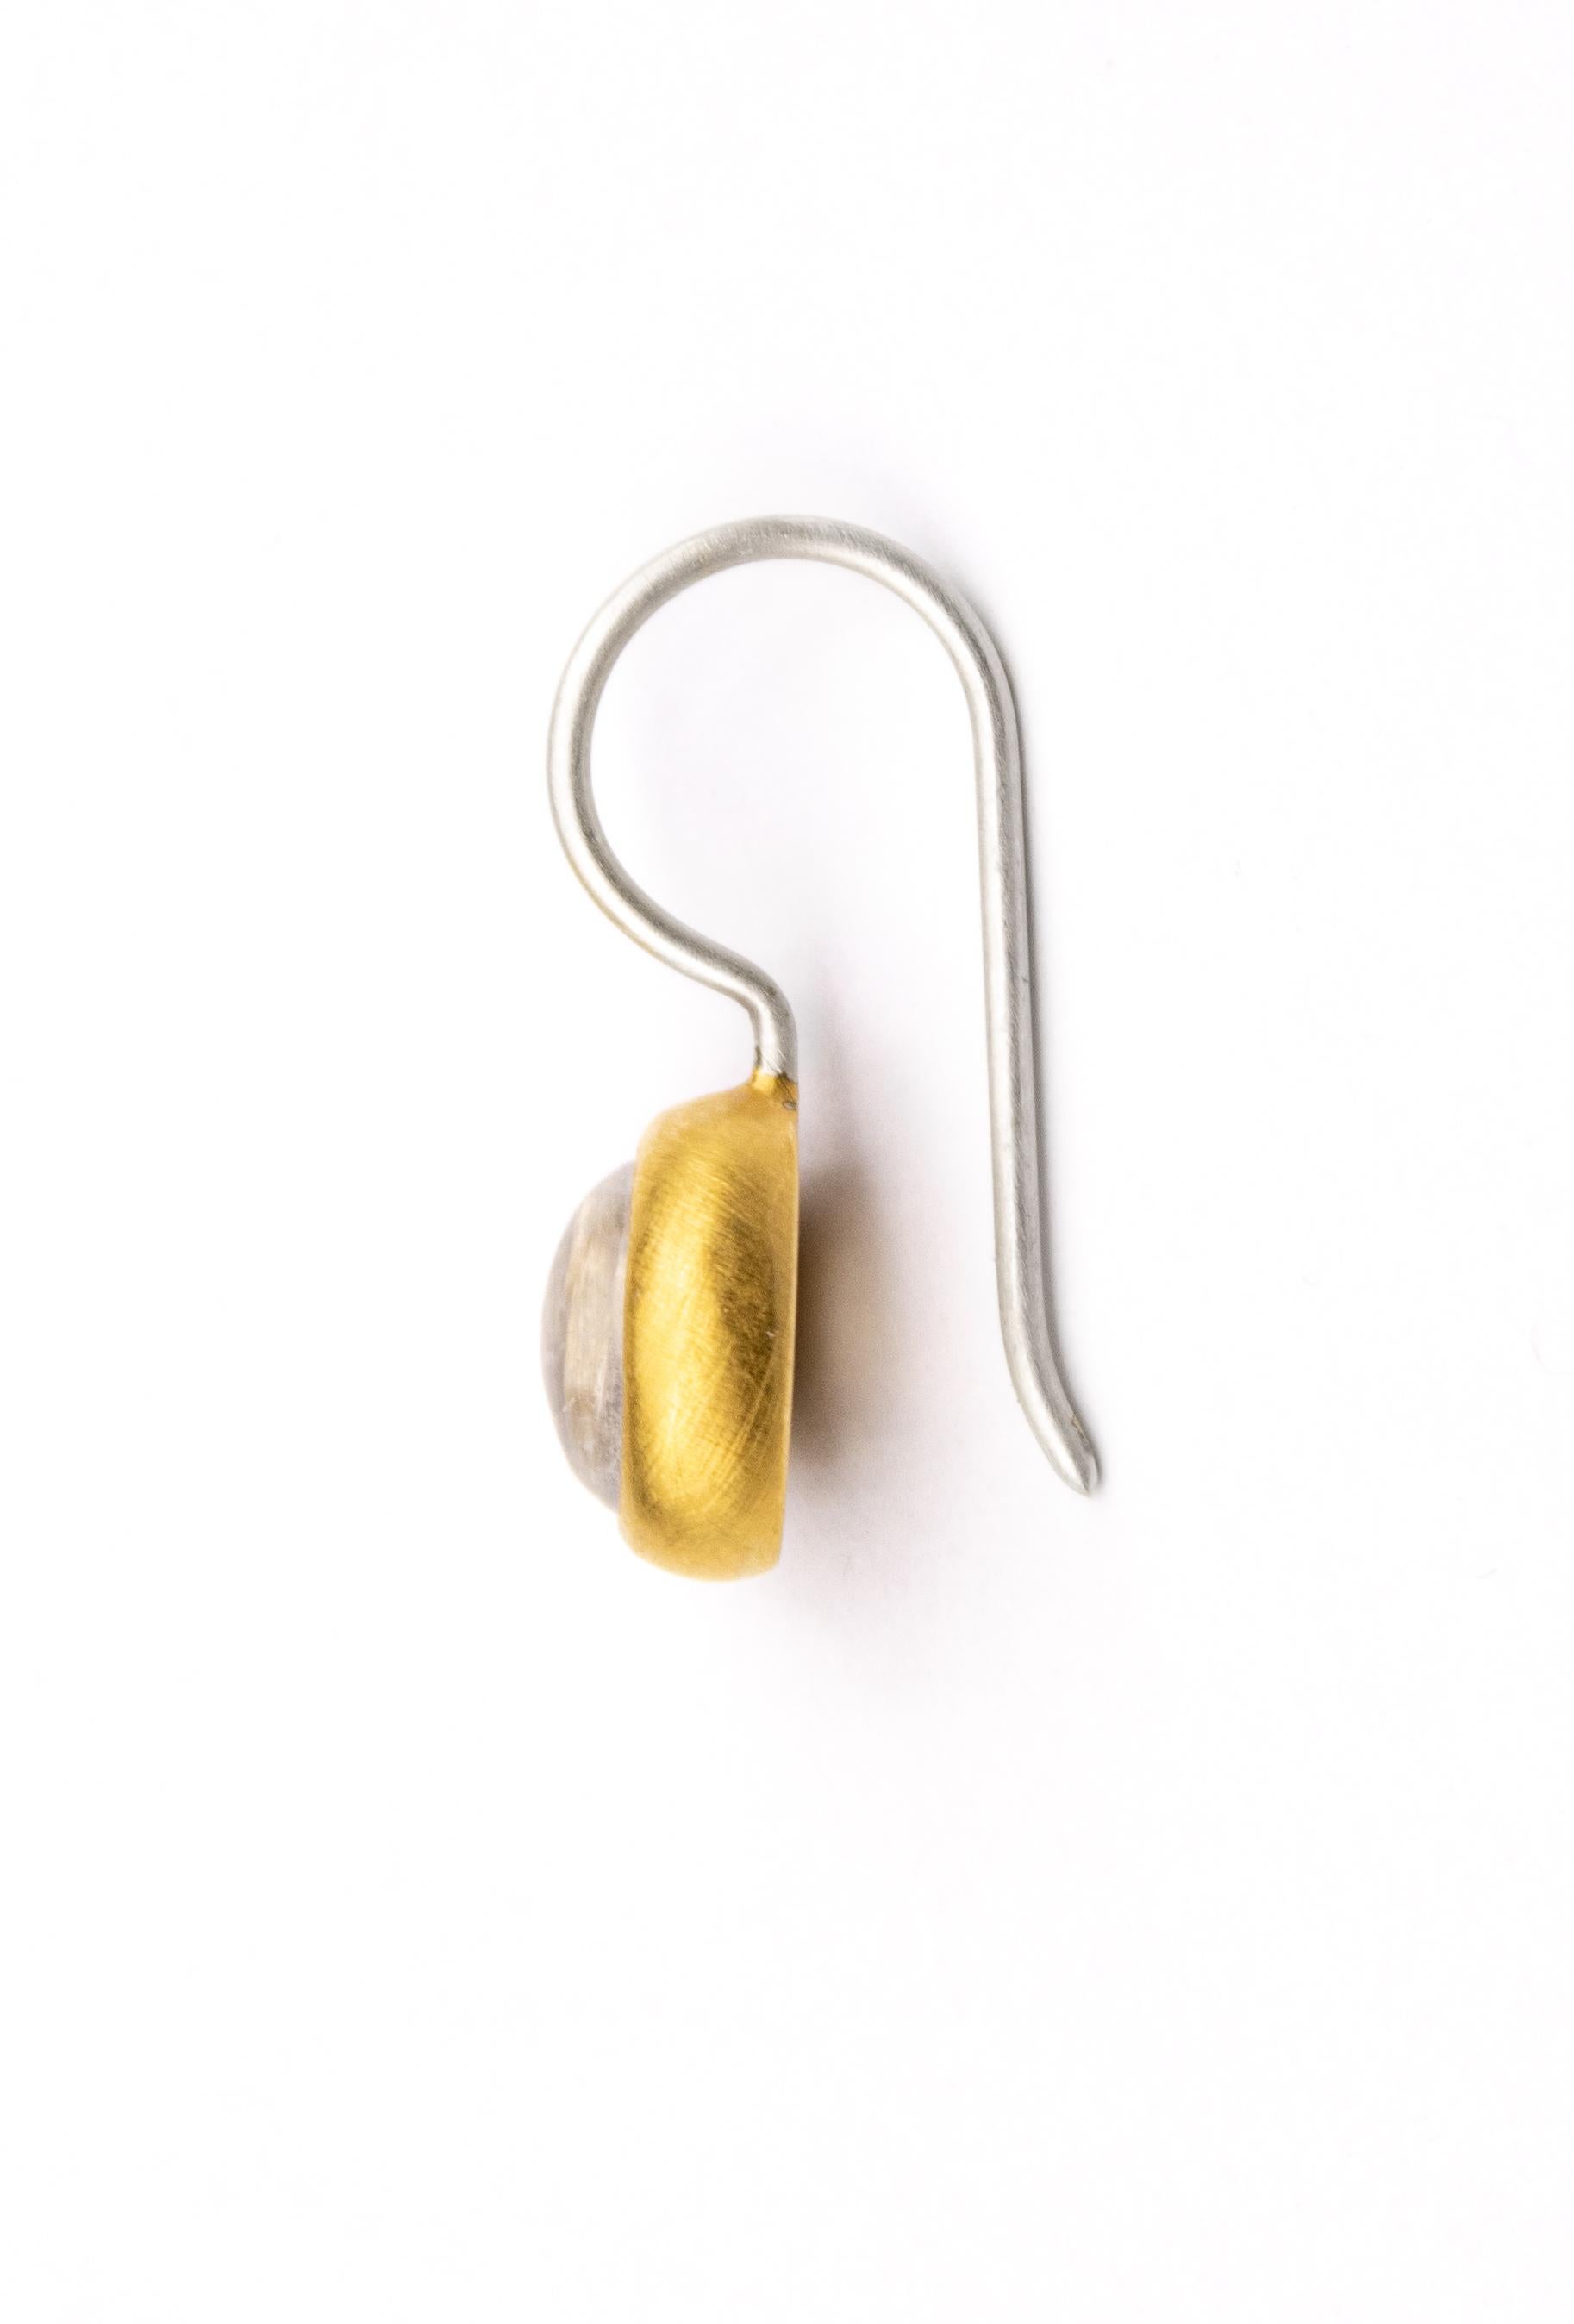 Die vergoldeten Regenbogen-Mondstein-Ohrringe aus Sterlingsilber sind Teil der Classic Collections und symbolisieren die zeitlosen und hochwertigen Designs von Monika Herré.

Die geschwungene Ohrringschiene gleitet sanft um das Ohr und ist mit